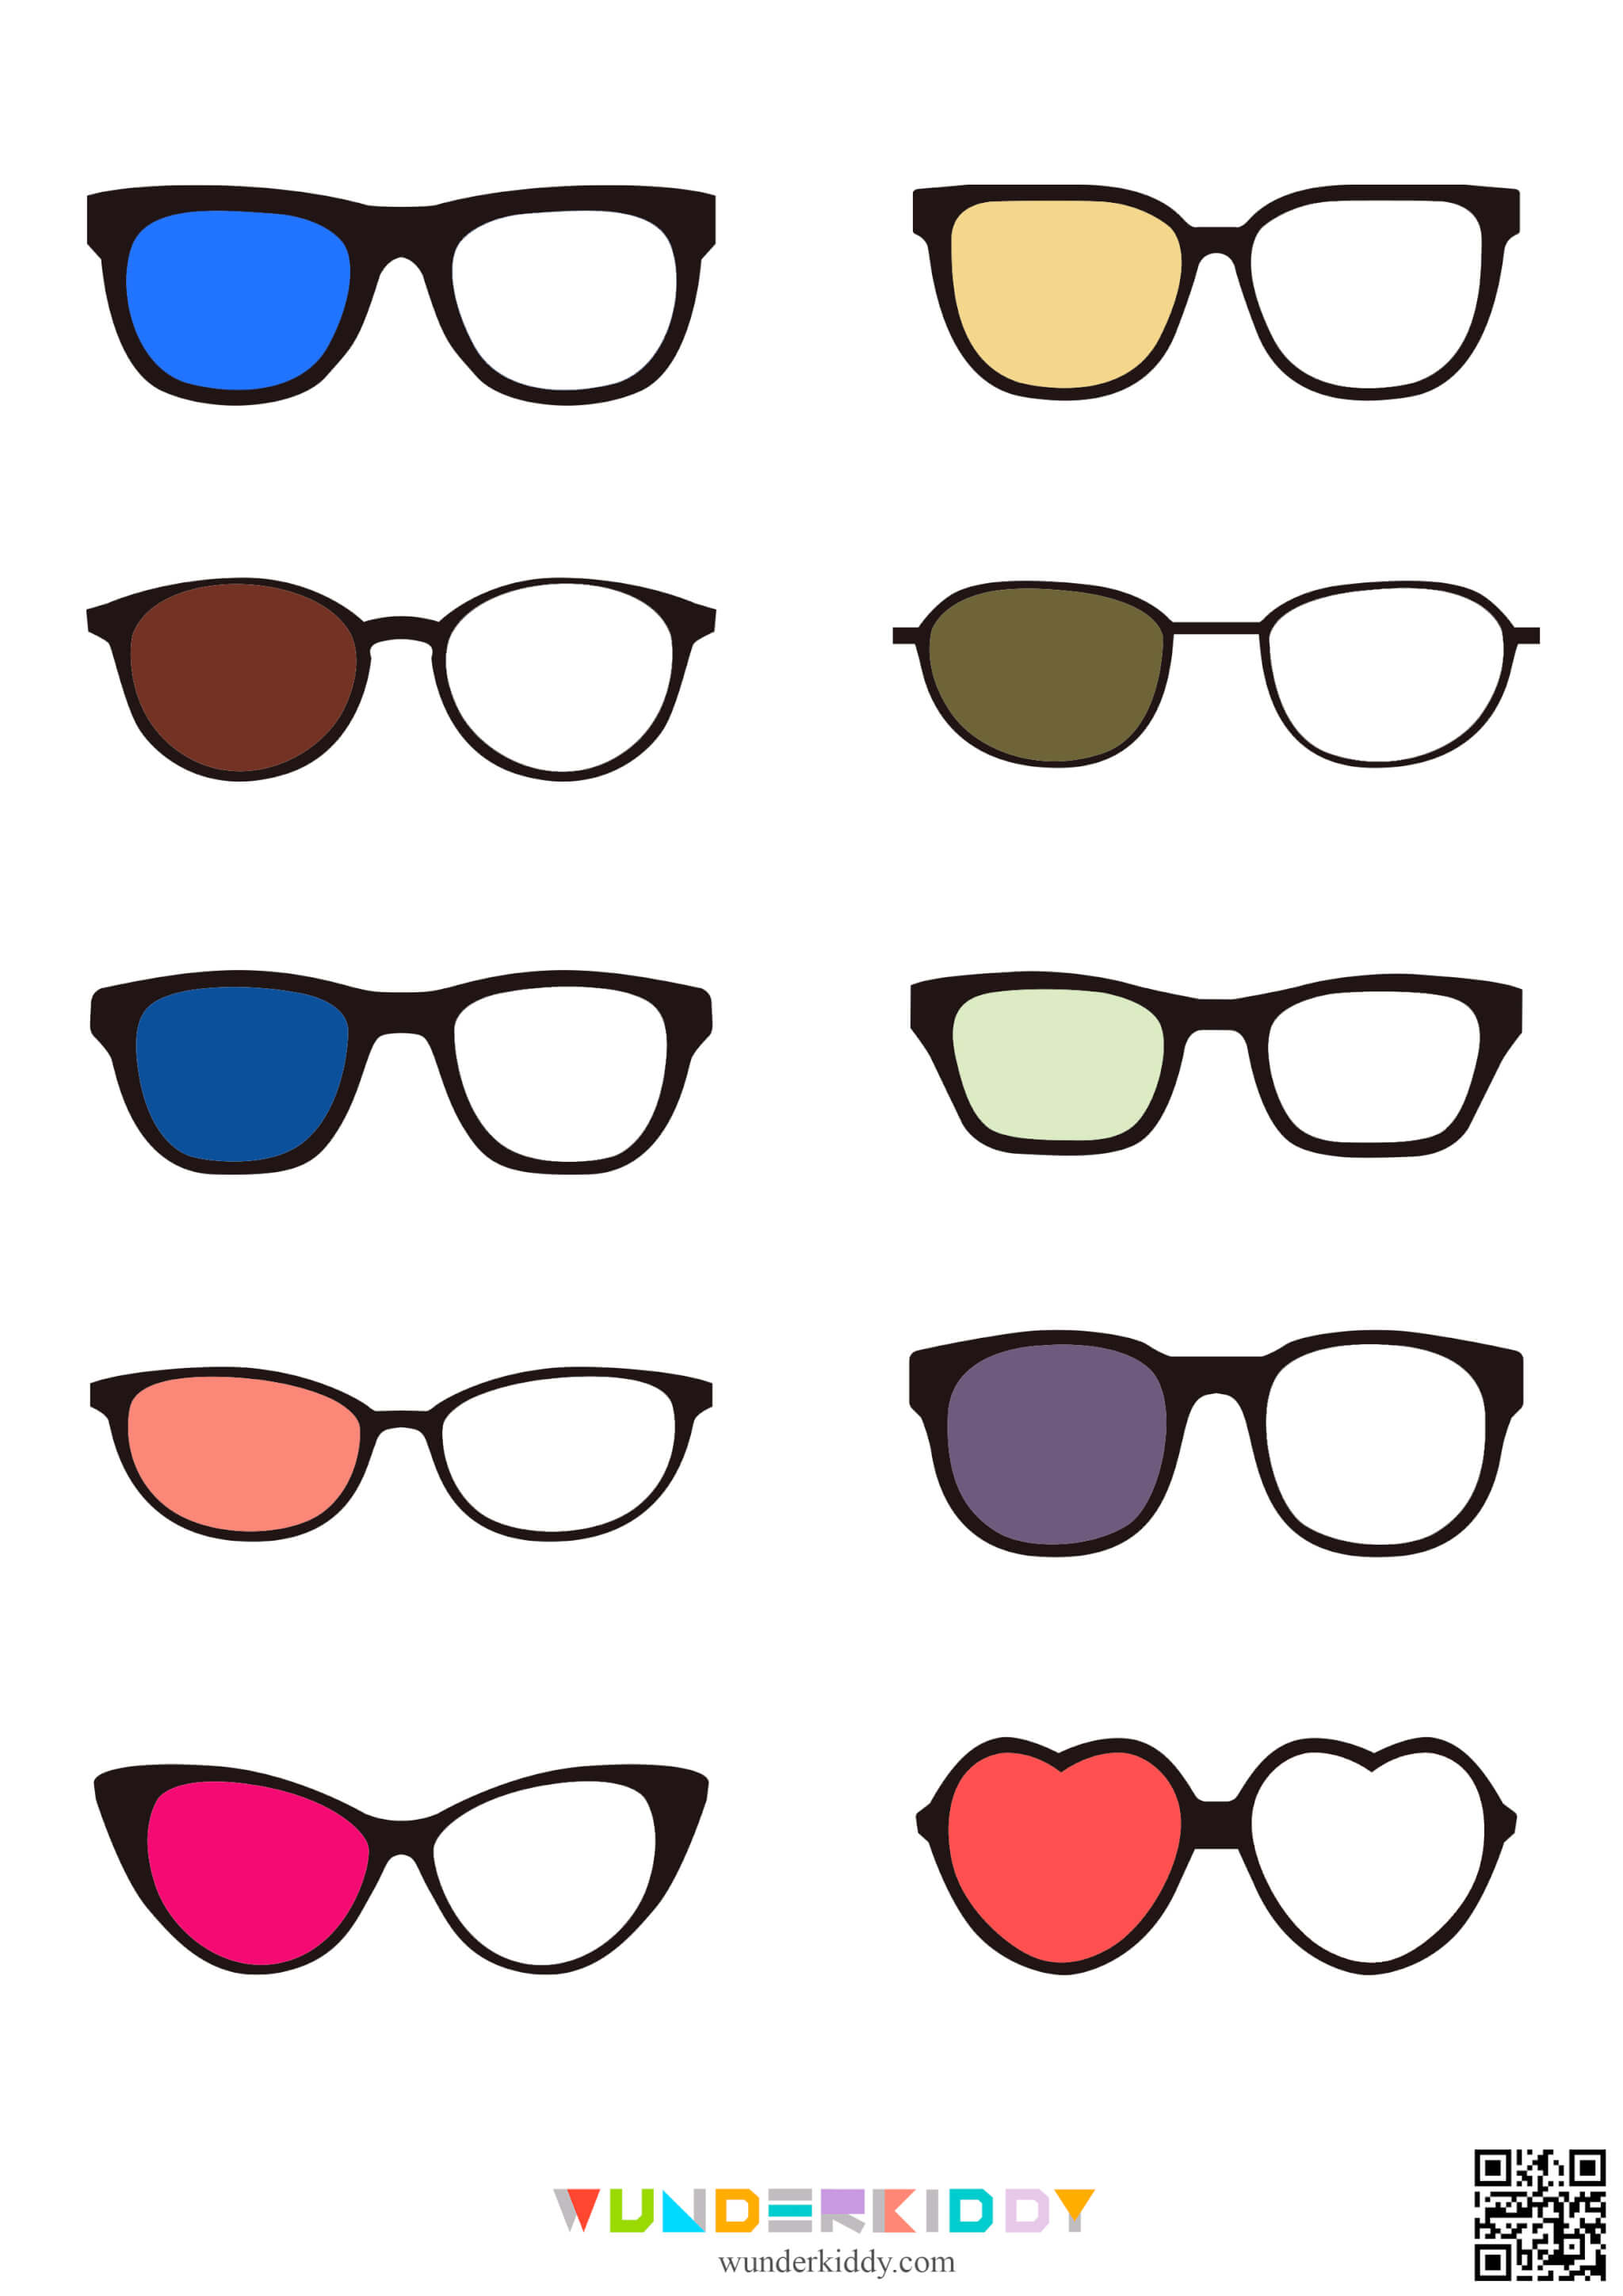 Glasses Color Match Worksheet - Image 3